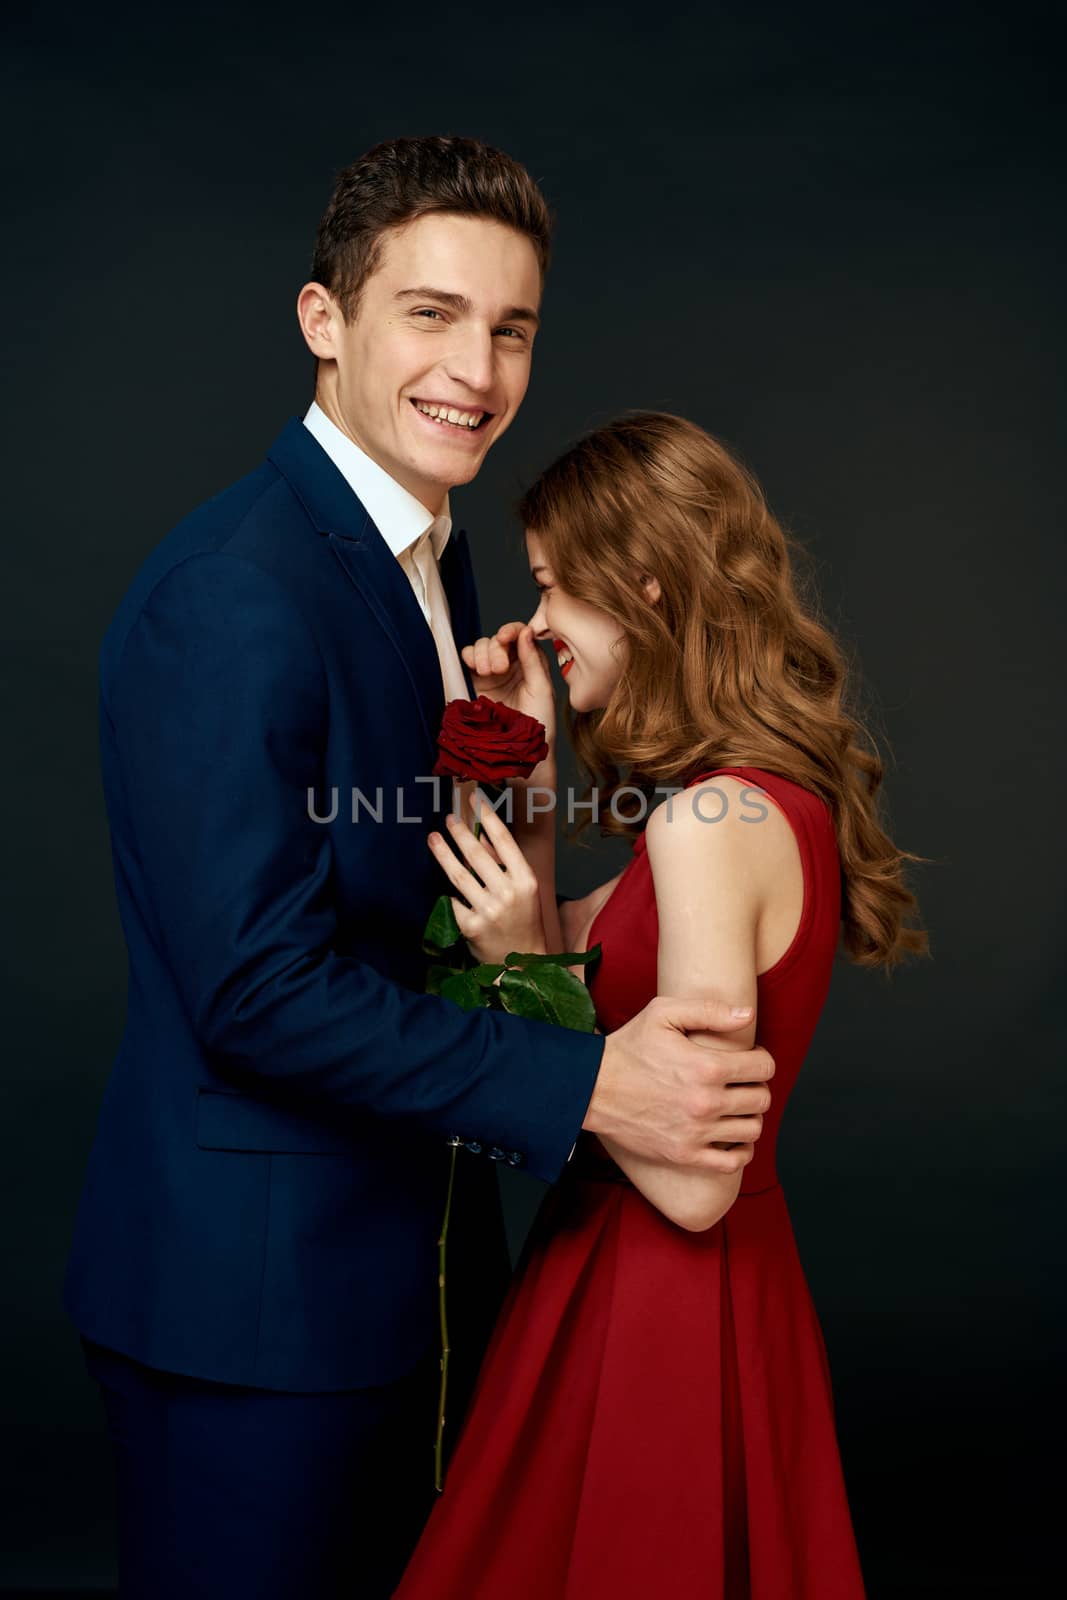 Beautiful couple charm hug lifestyle relationship rose luxury dark background. High quality photo